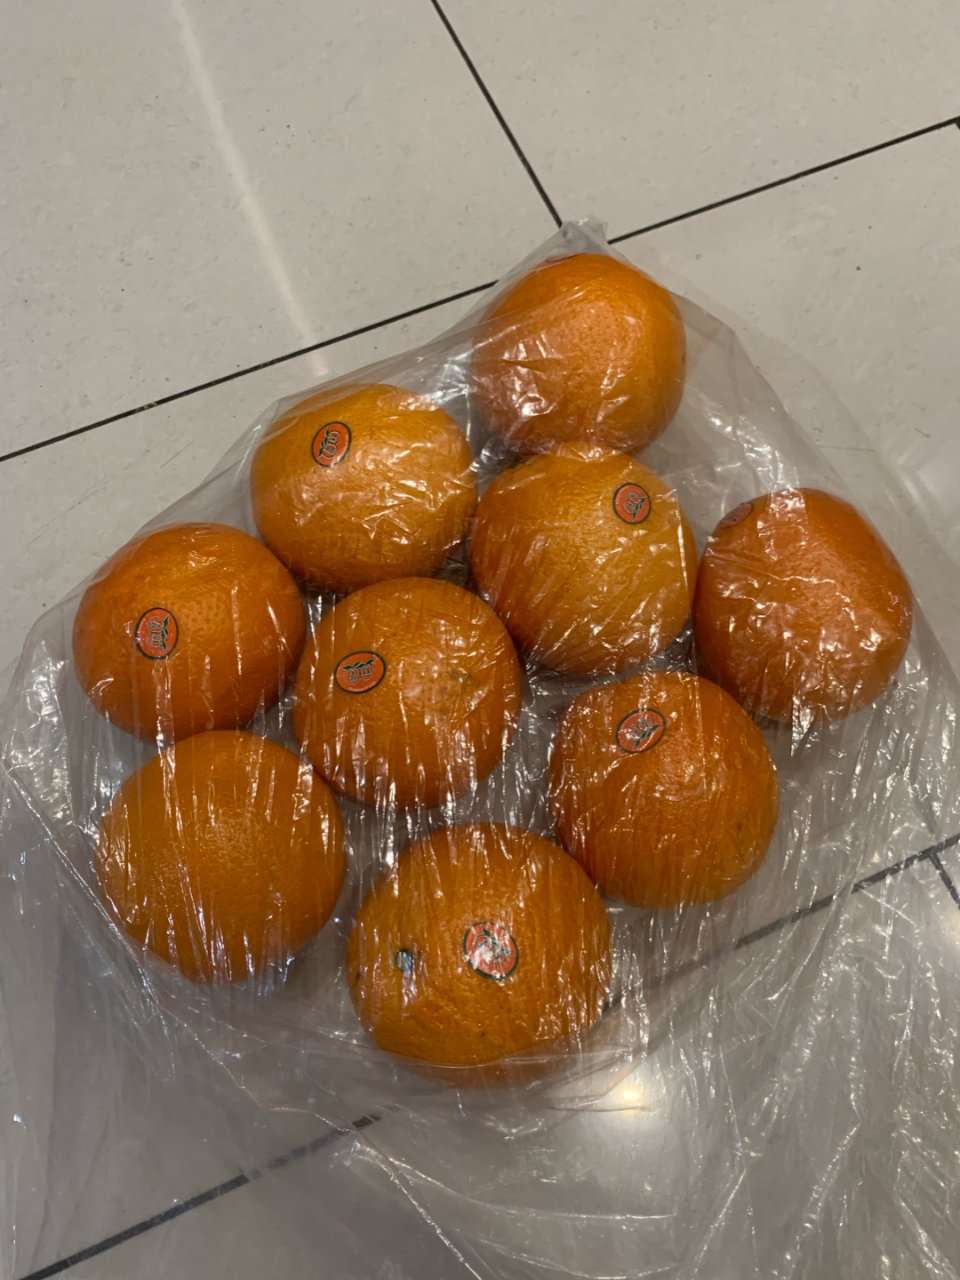 双喜甜橙 from Weee...